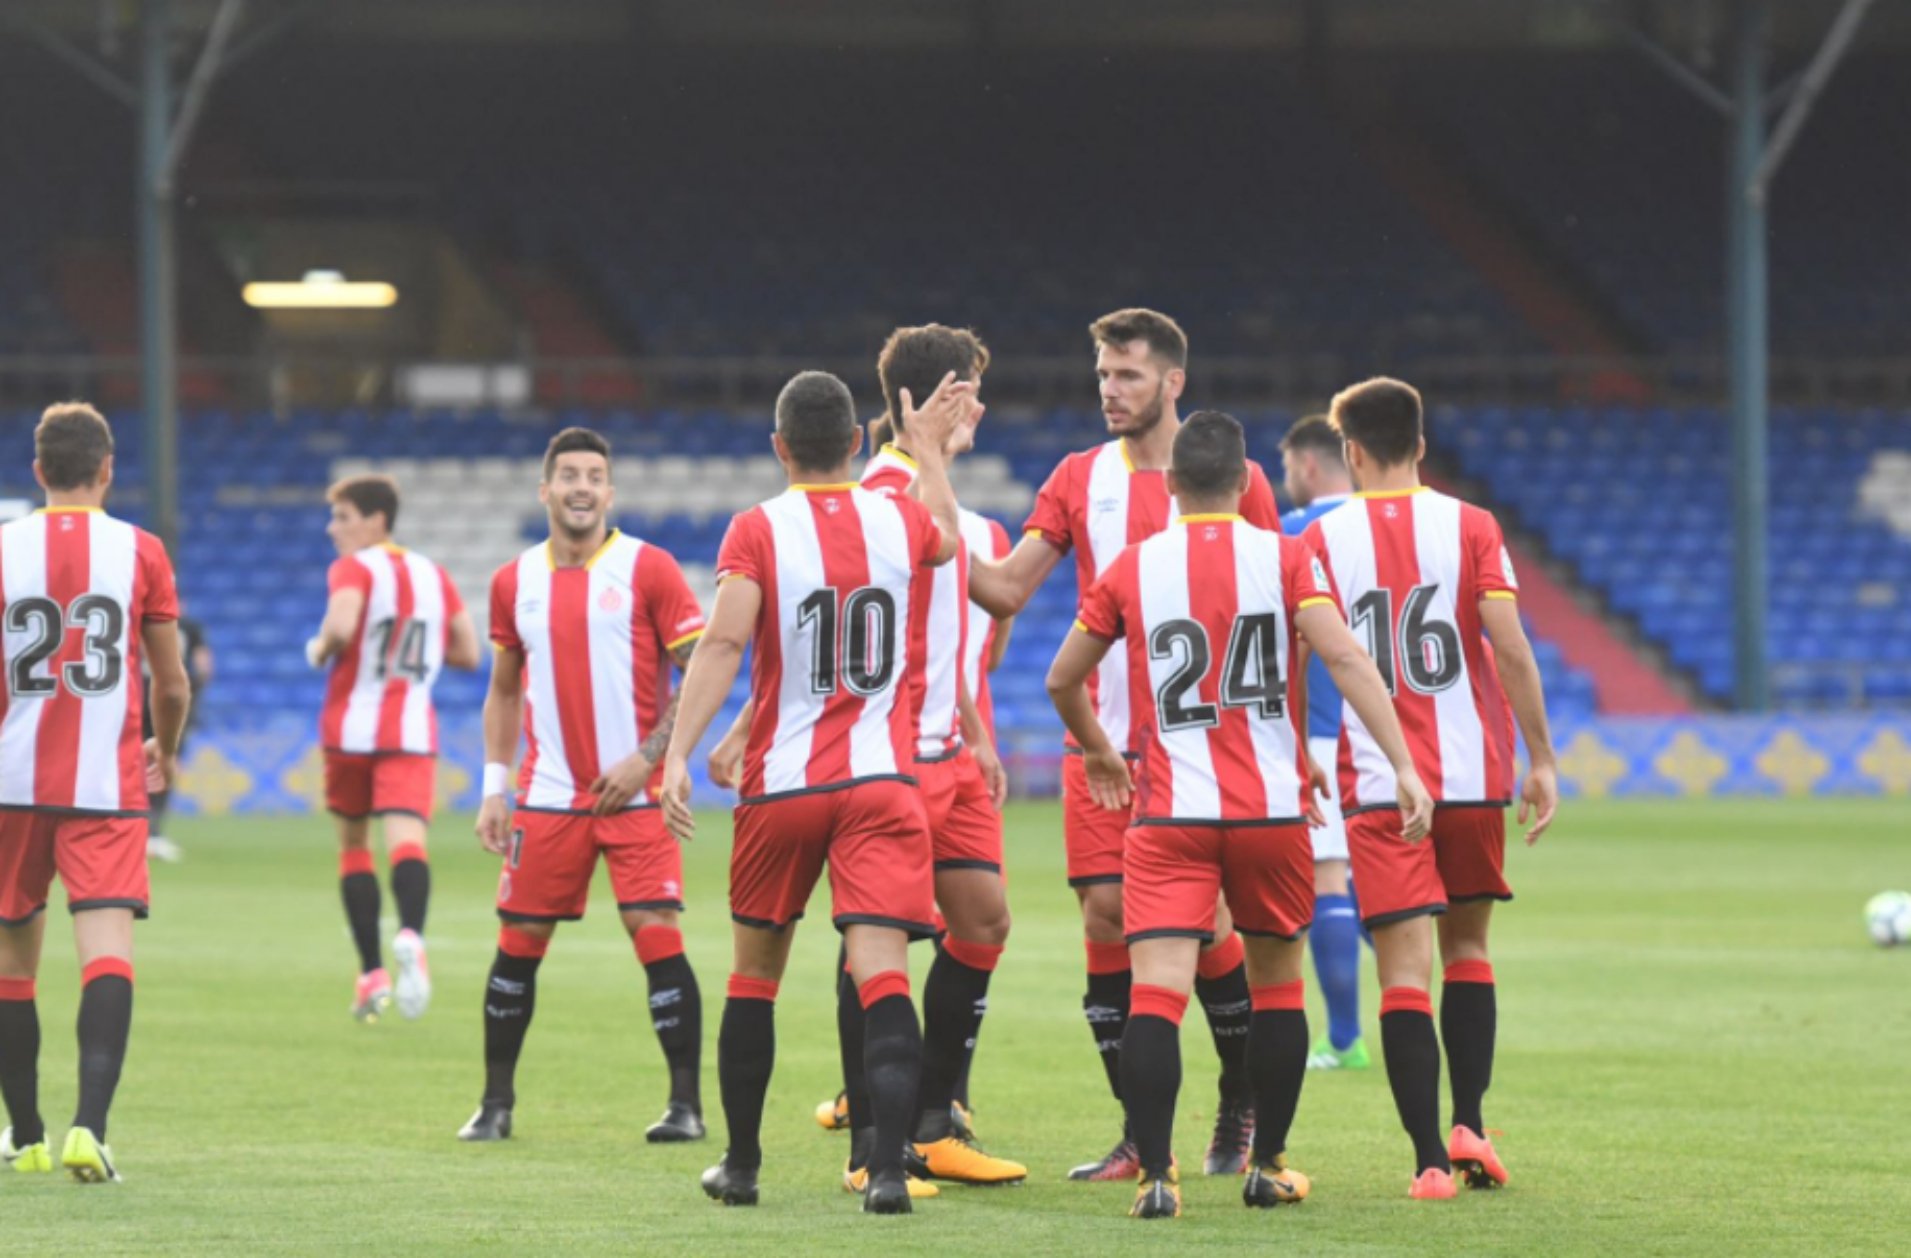 El Girona s'acomiada d'Anglaterra amb victòria (1-2)